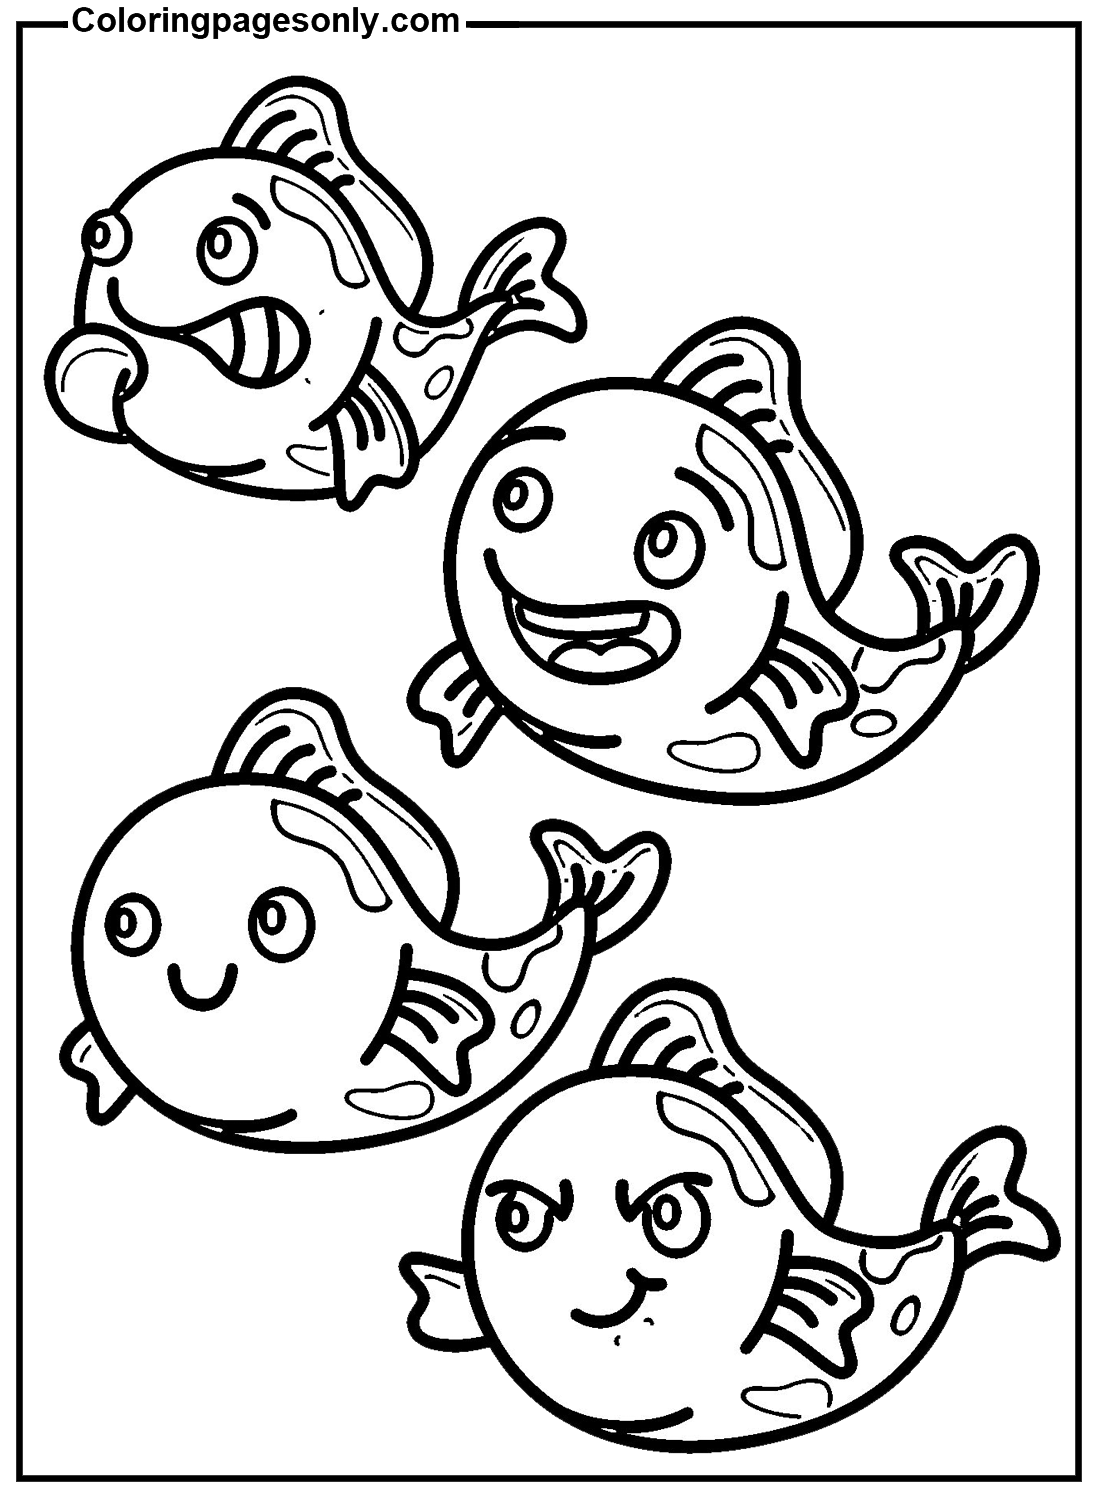 Cartoon Koivissen van Koi Fish